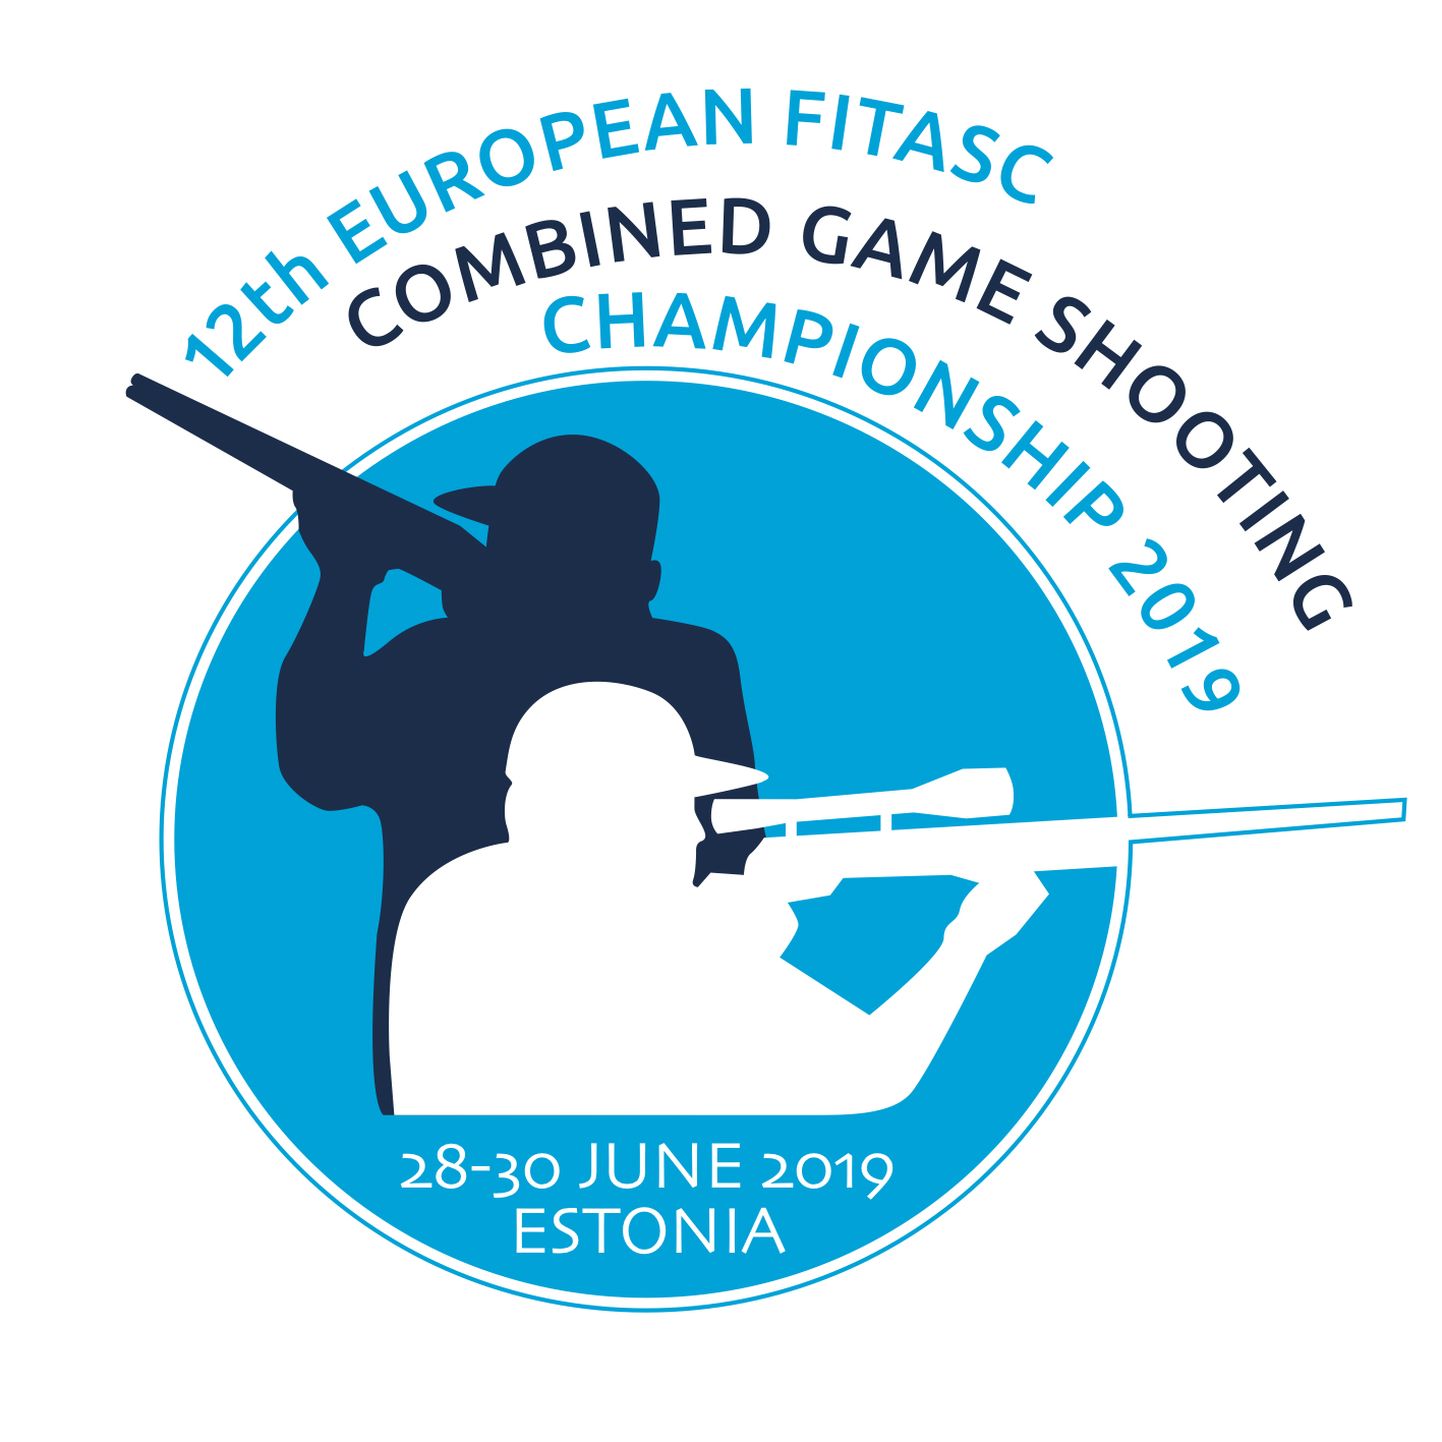 Euroopa meistrivõistlused kombineeritud jahipraktilises laskmises peetakse juuni lõpus Eestis.